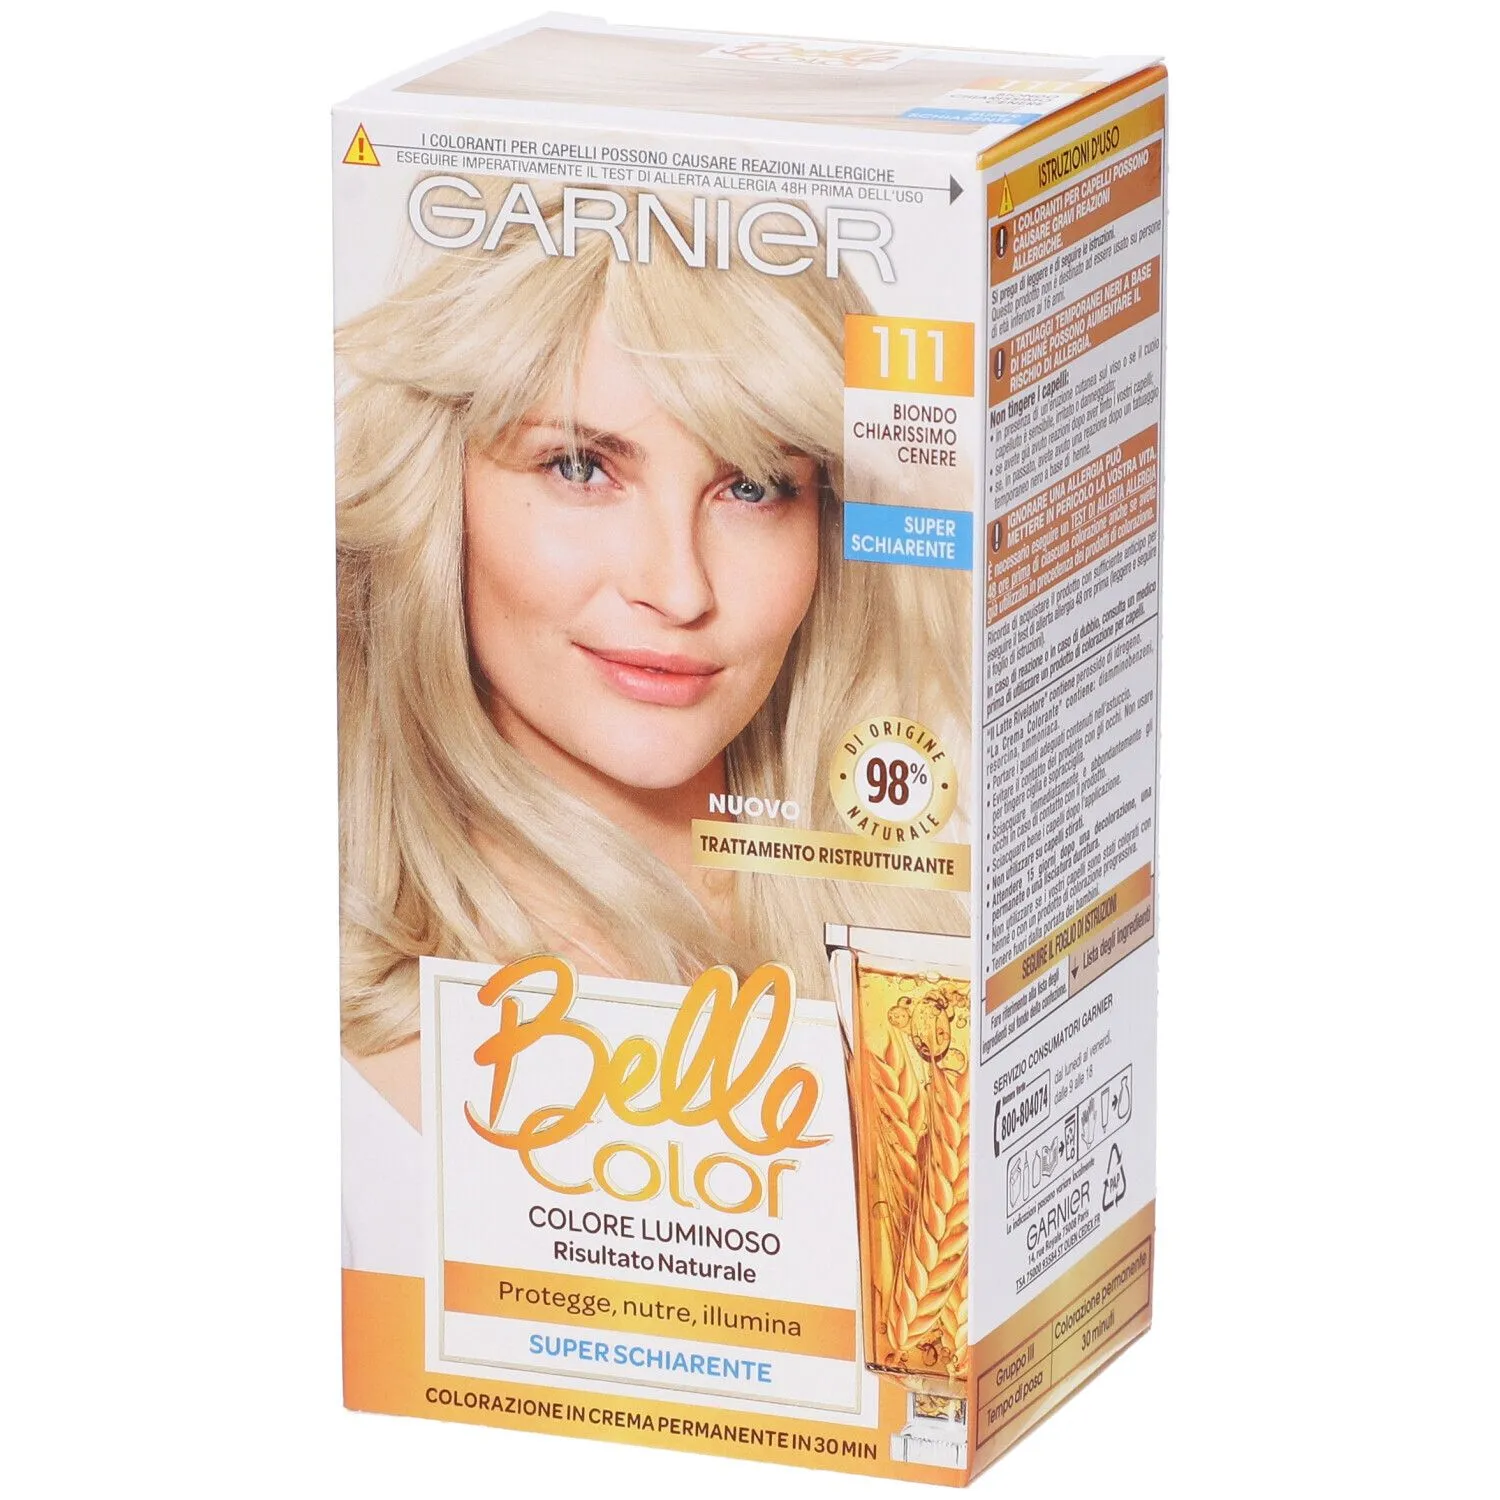  Tinta Capelli Belle Color, Colore Luminoso e Riflessi Naturali, Copre il 100% dei capelli bianchi, Biondo Chiarissimo Cenere Naturale